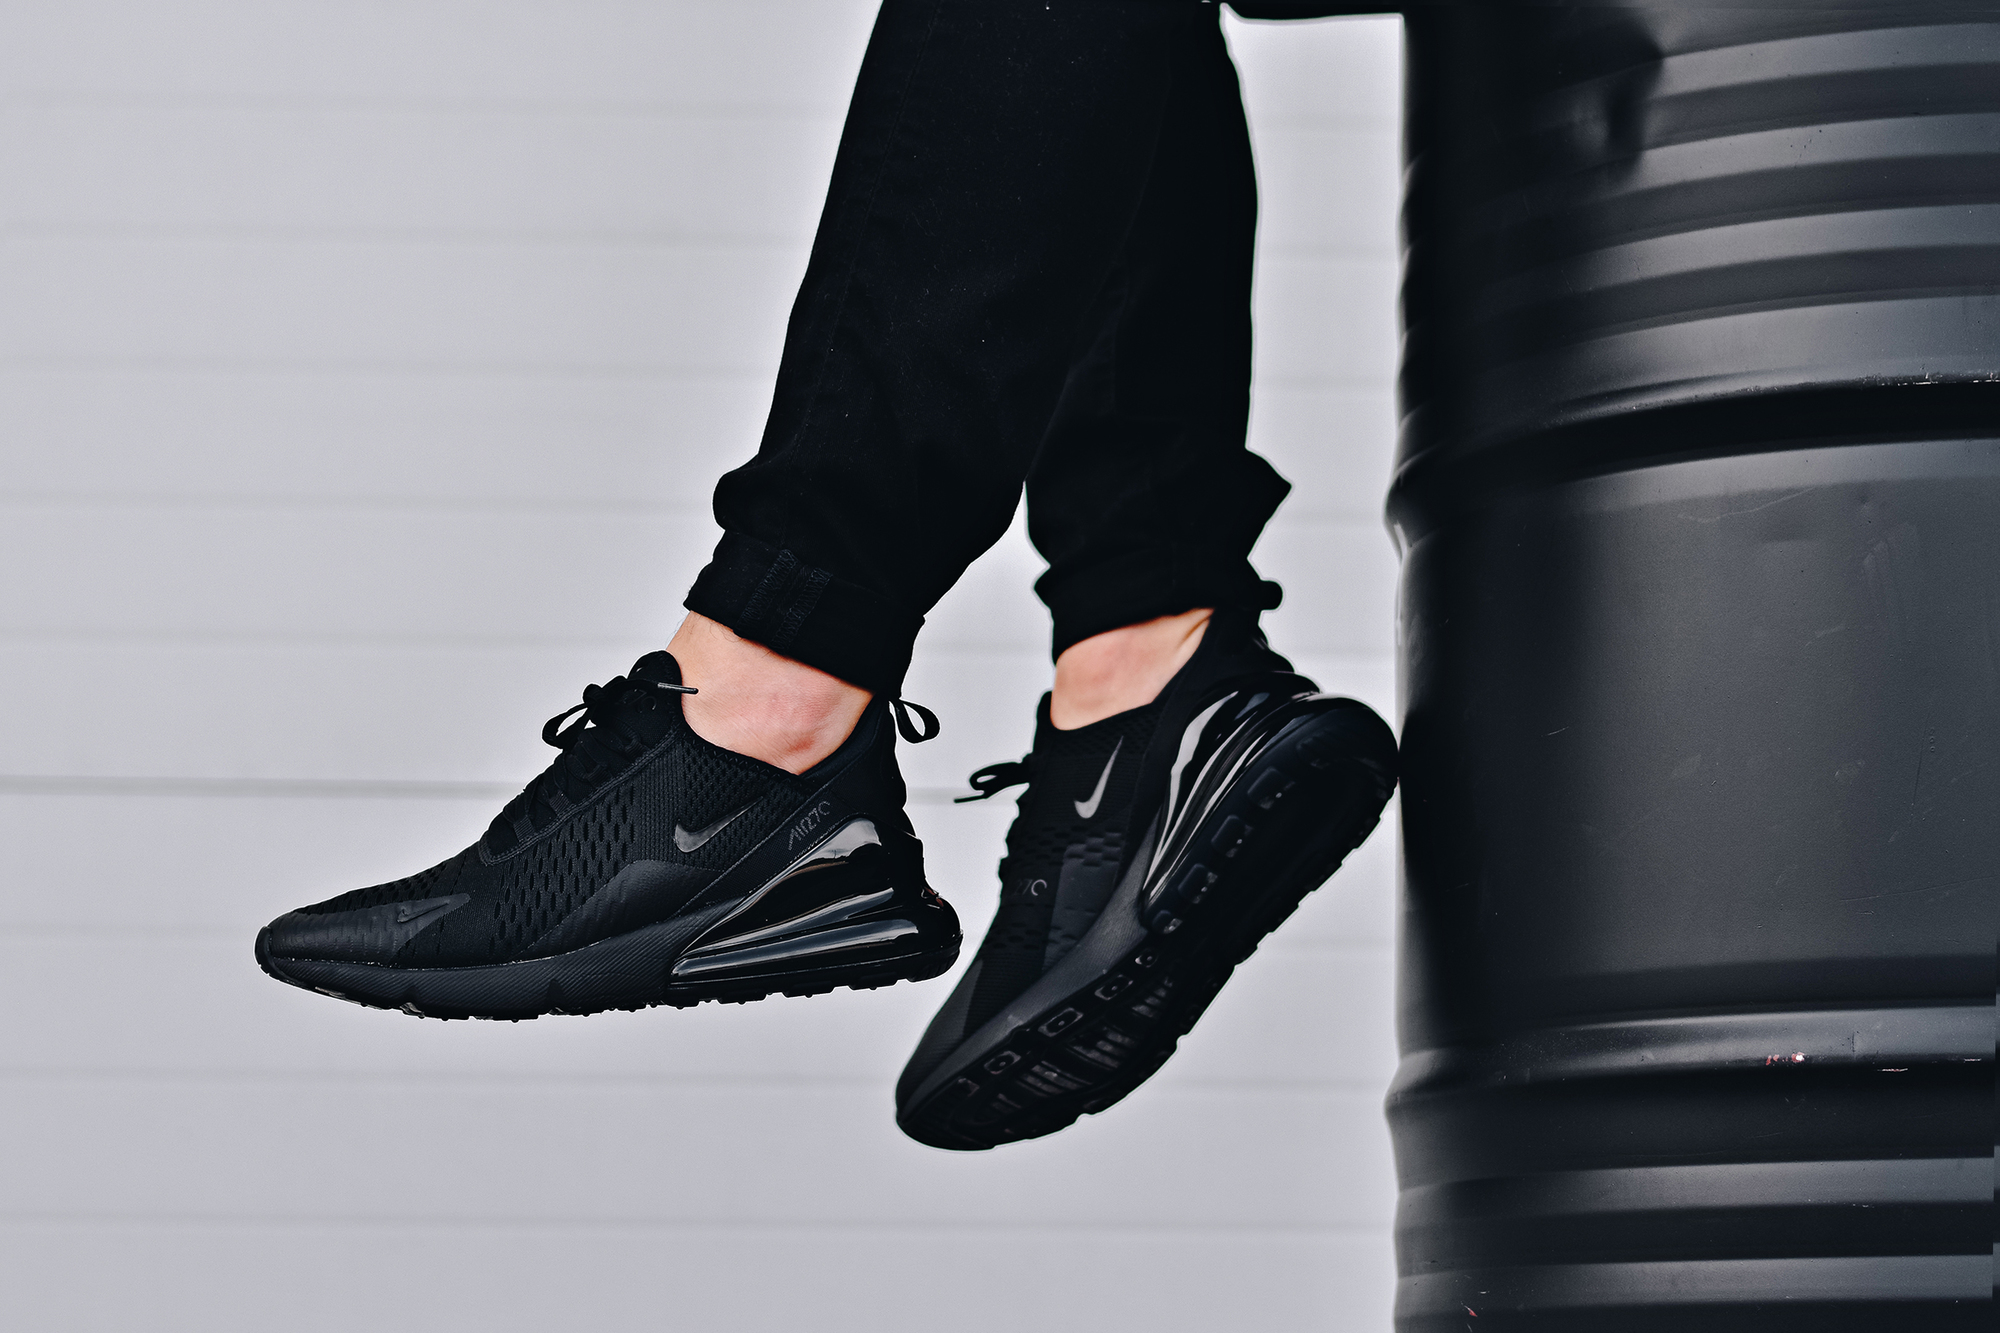 Nike Air Max 270 sneakers in triple black